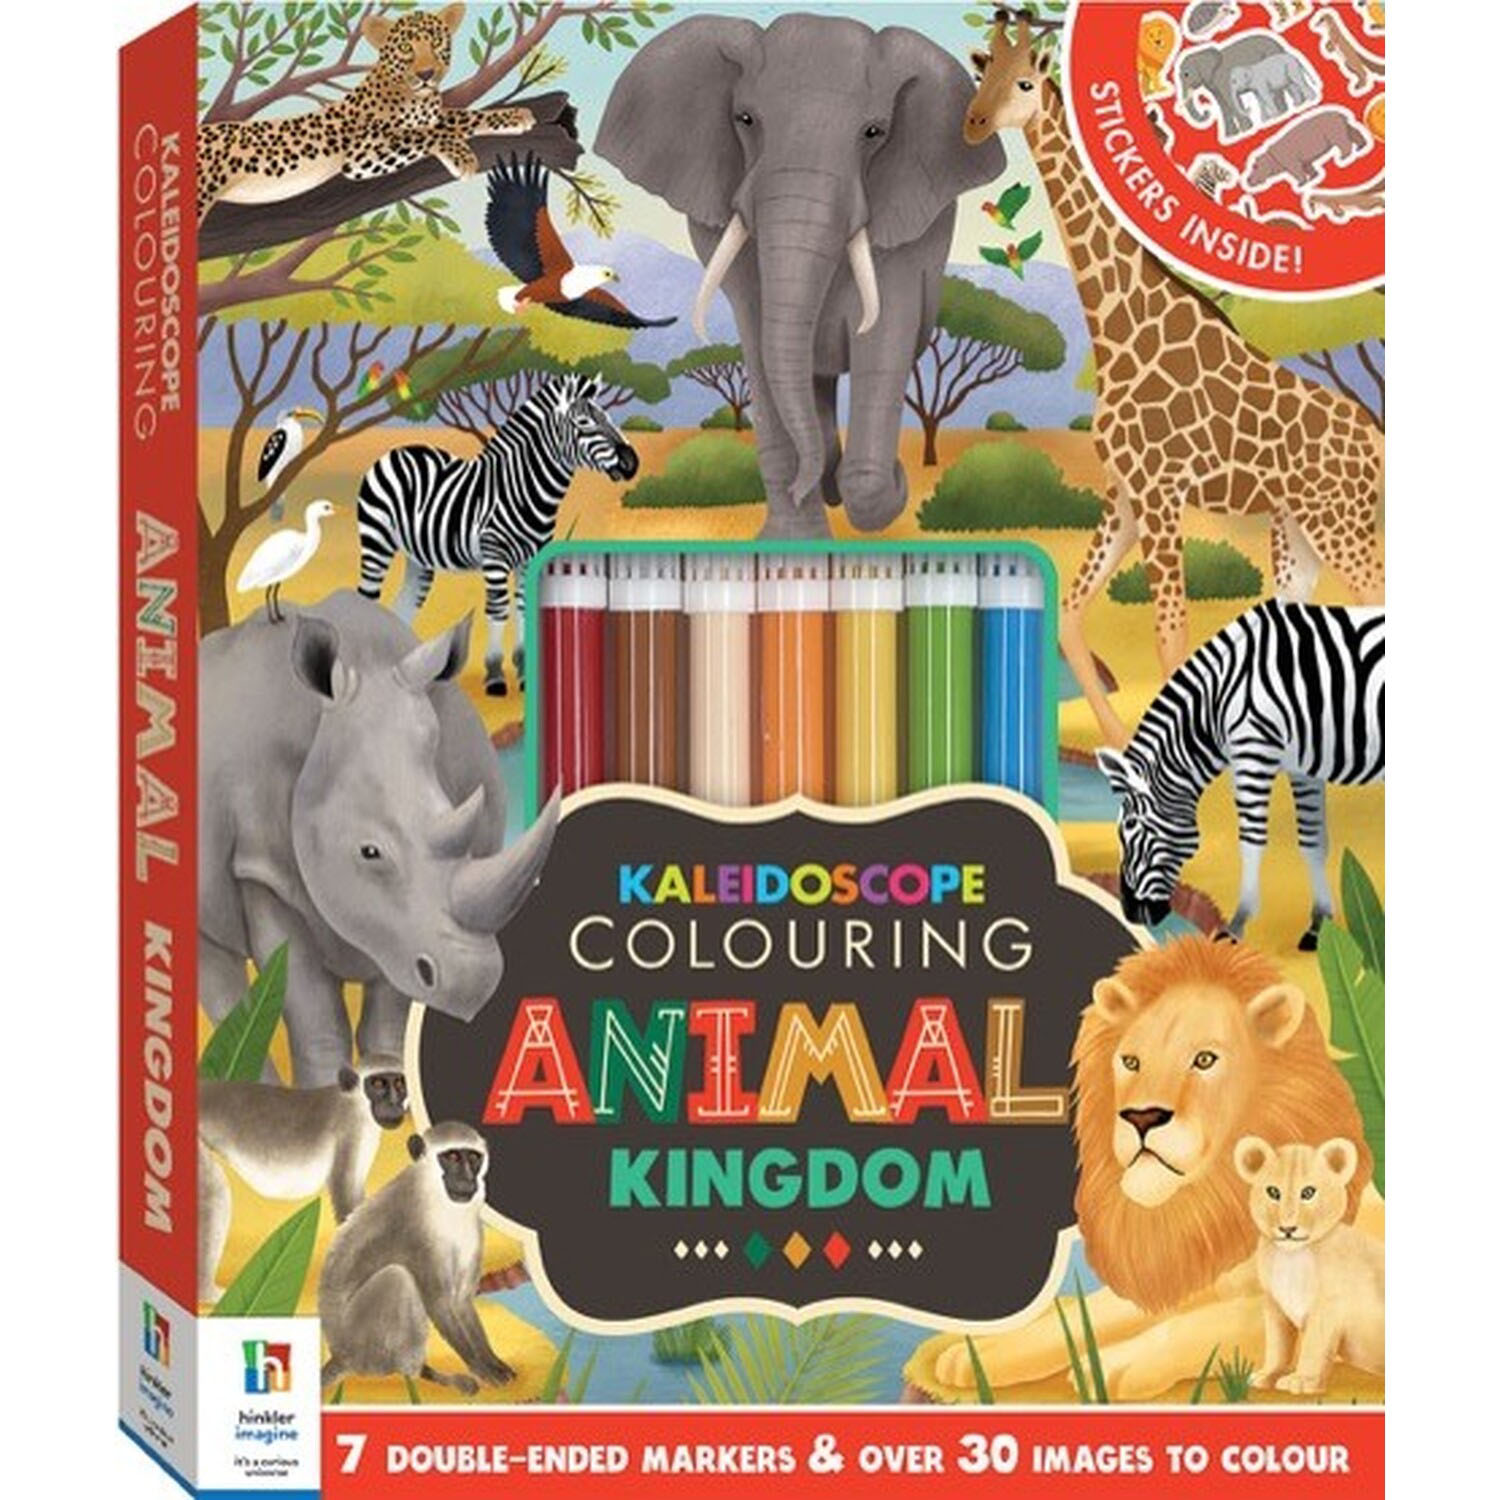 Kaleidoscope Colouring Animal Kingdom Image